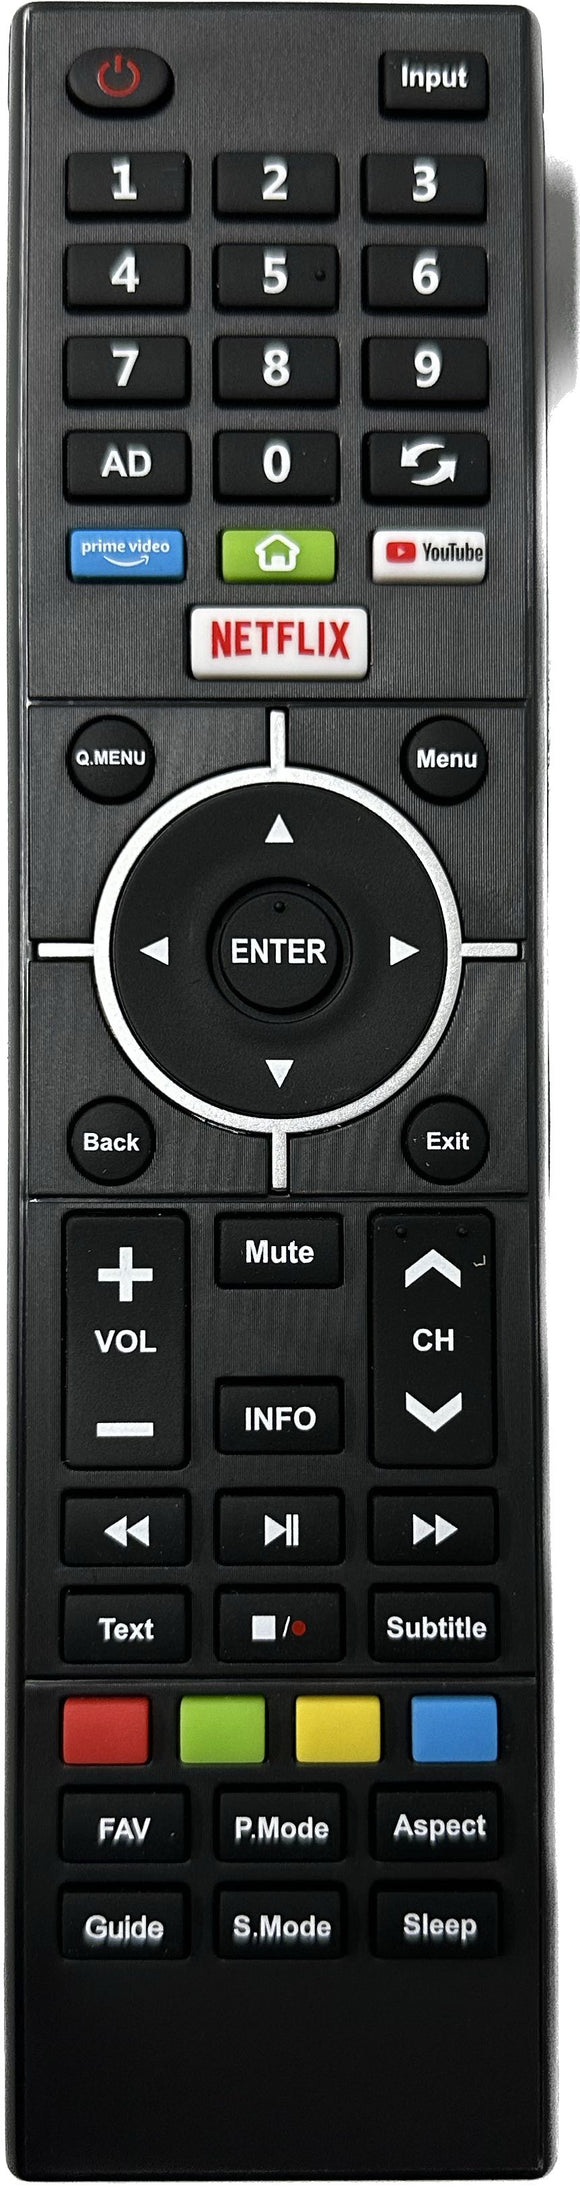 SEIKI SC4000S Smart TV Remote Control